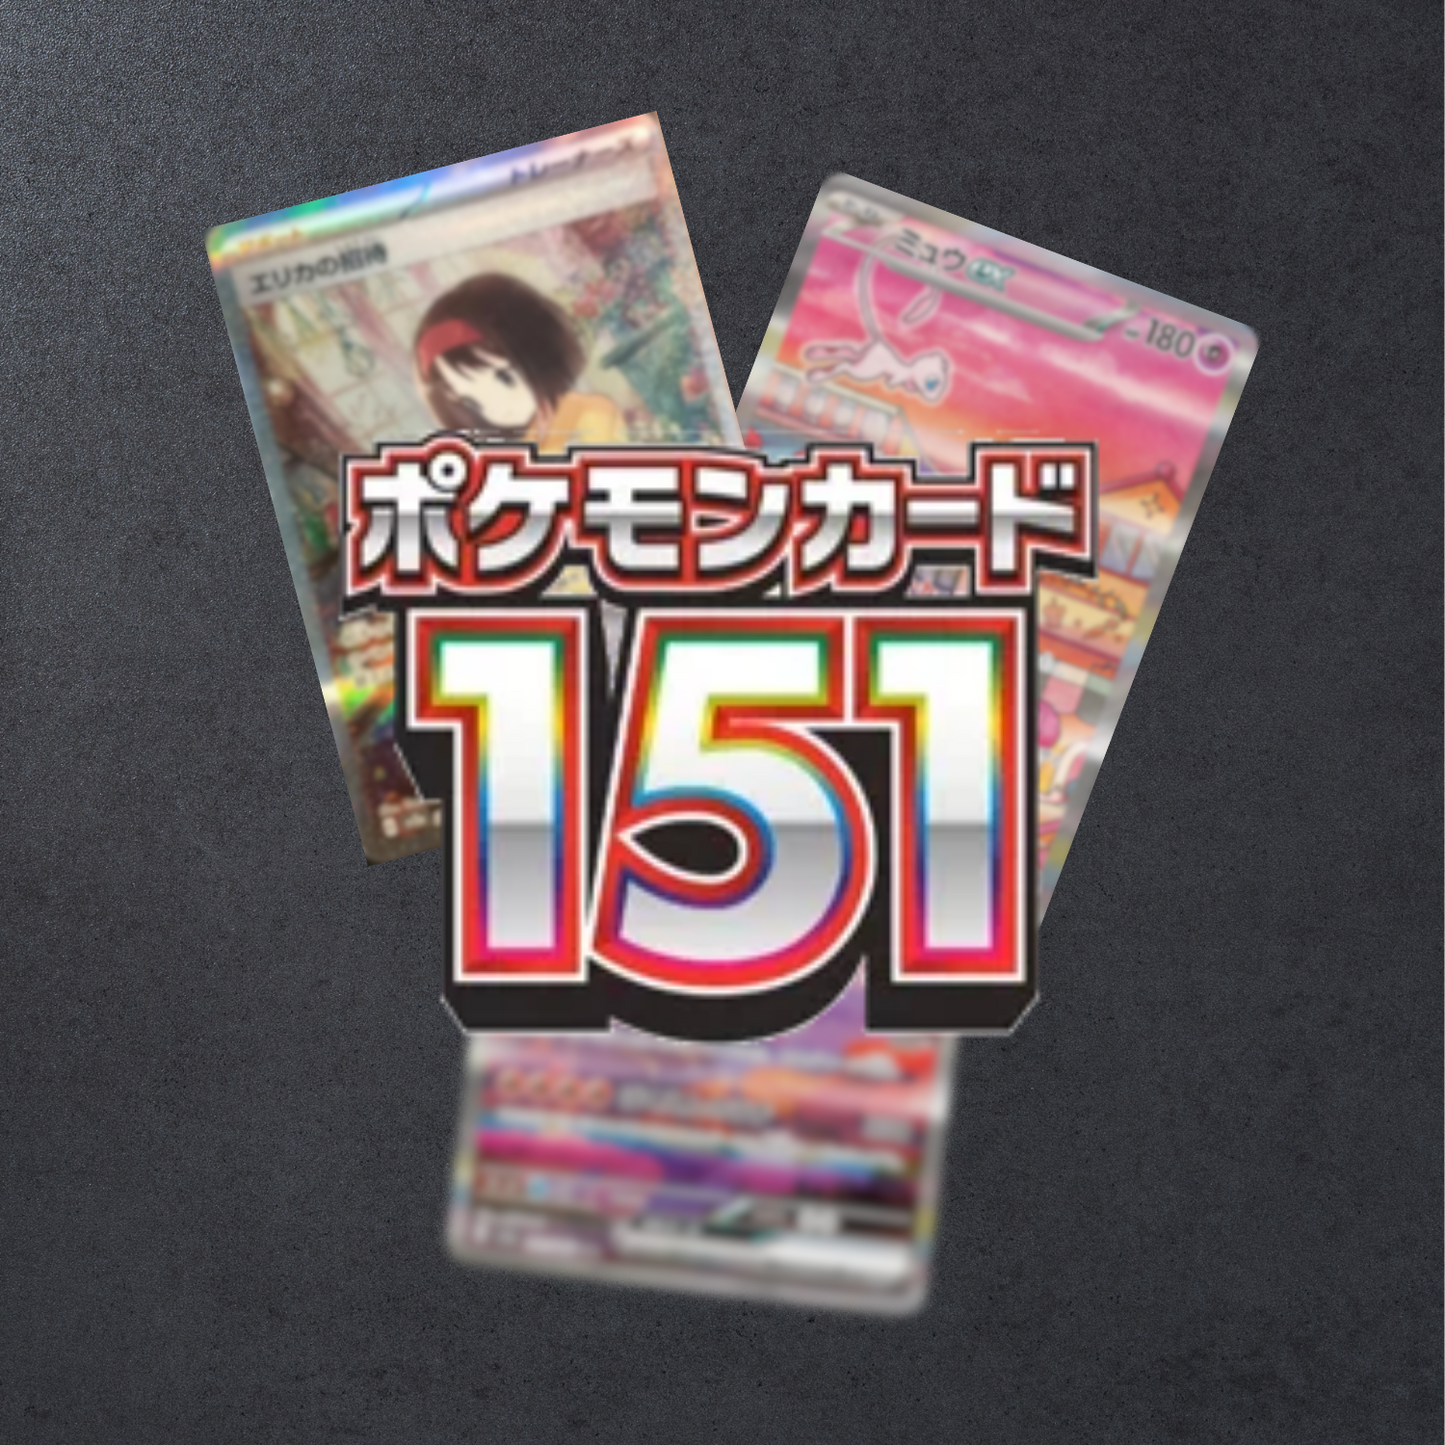 [JP] Pokemon 151 SV2A (Japanese)